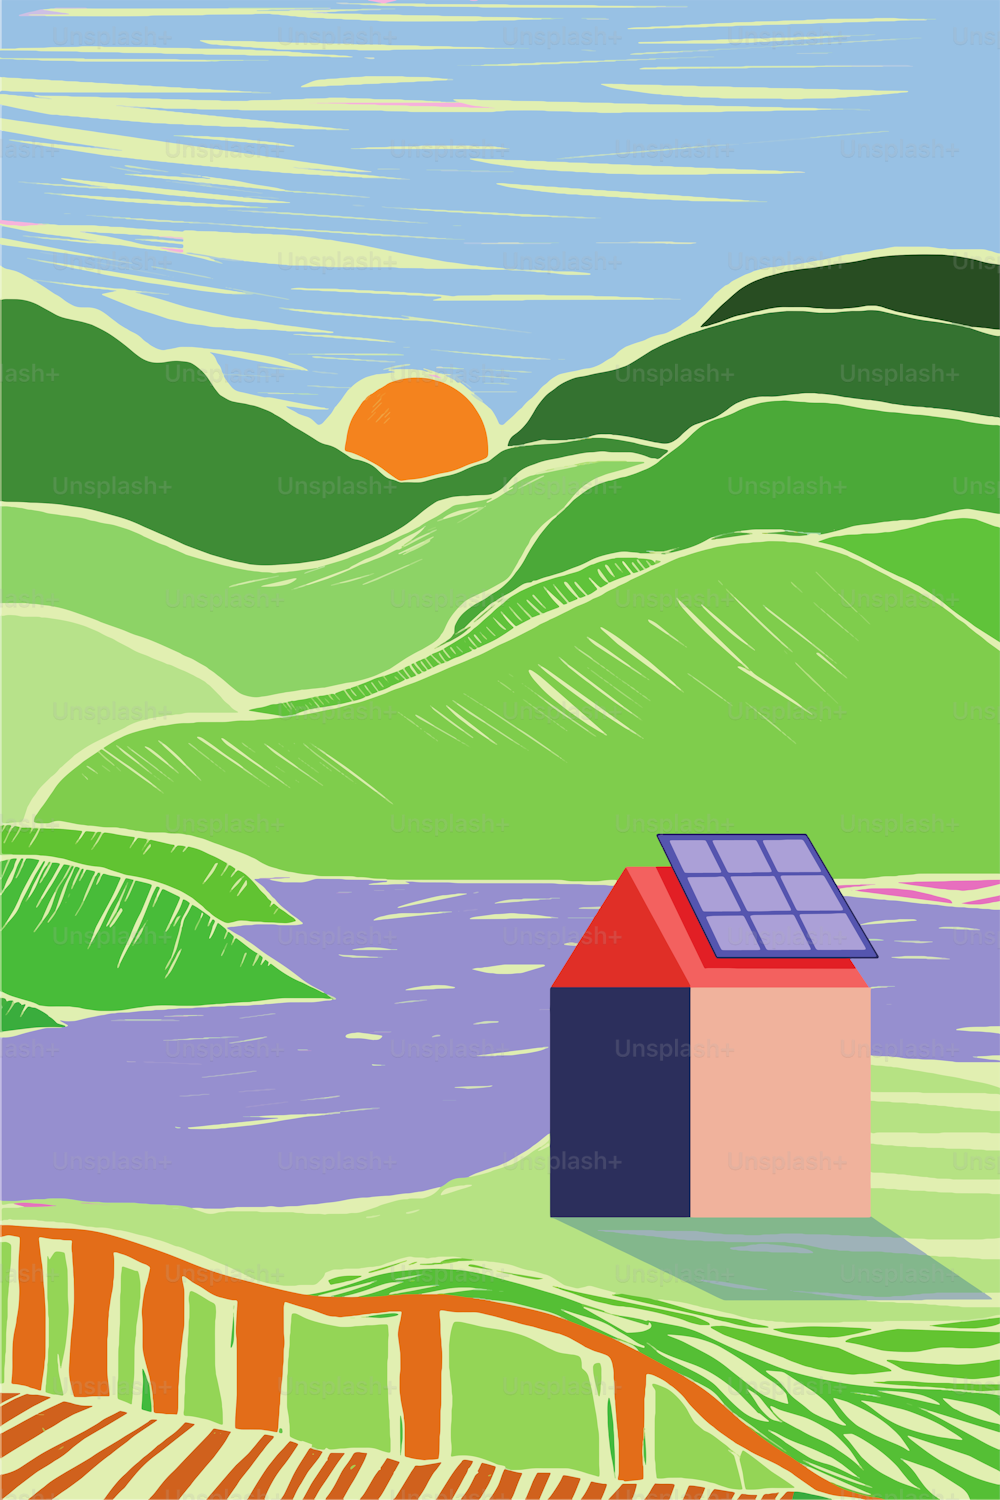 Un petit village qui se met au vert et qui est durable en installant des panneaux solaires sur les toits. Style de gravure